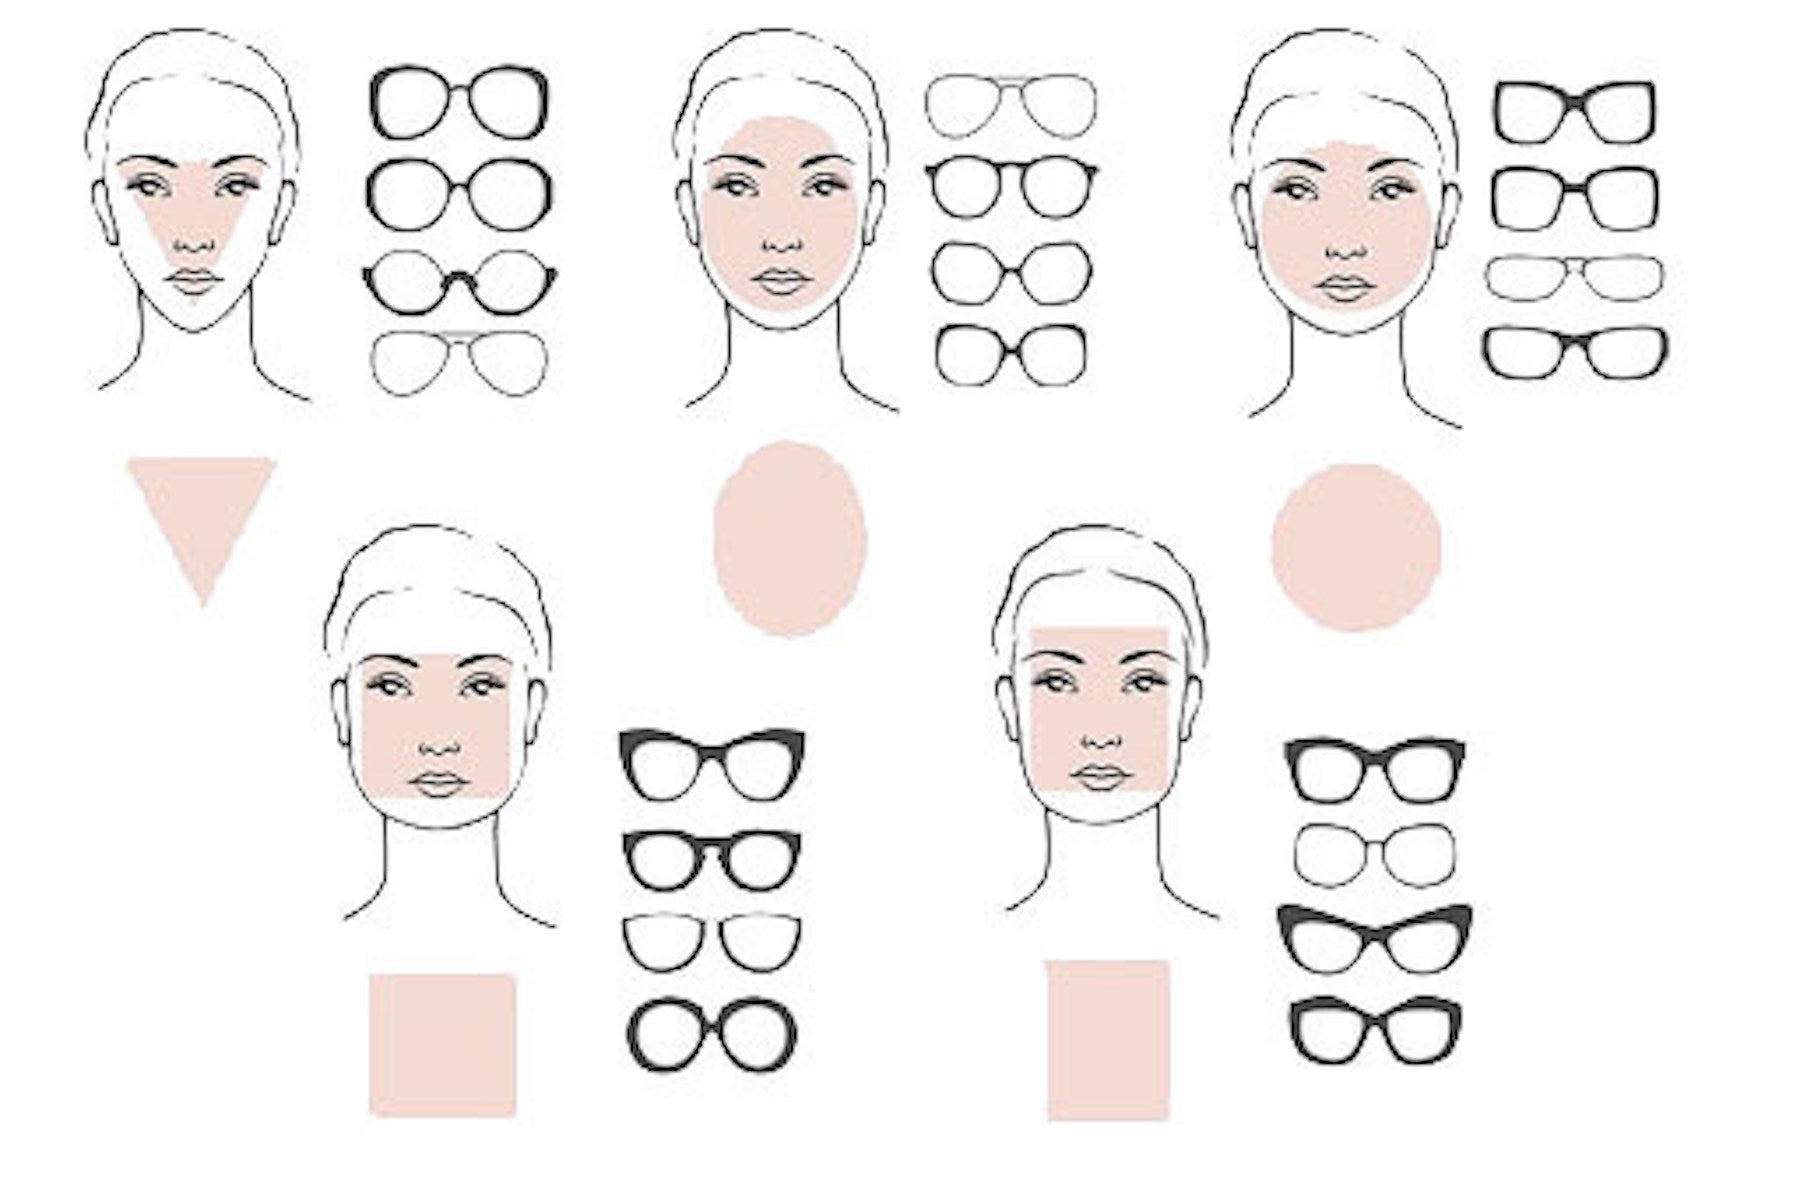 Choisir ses lunettes selon la forme de son visage - BIG Blog